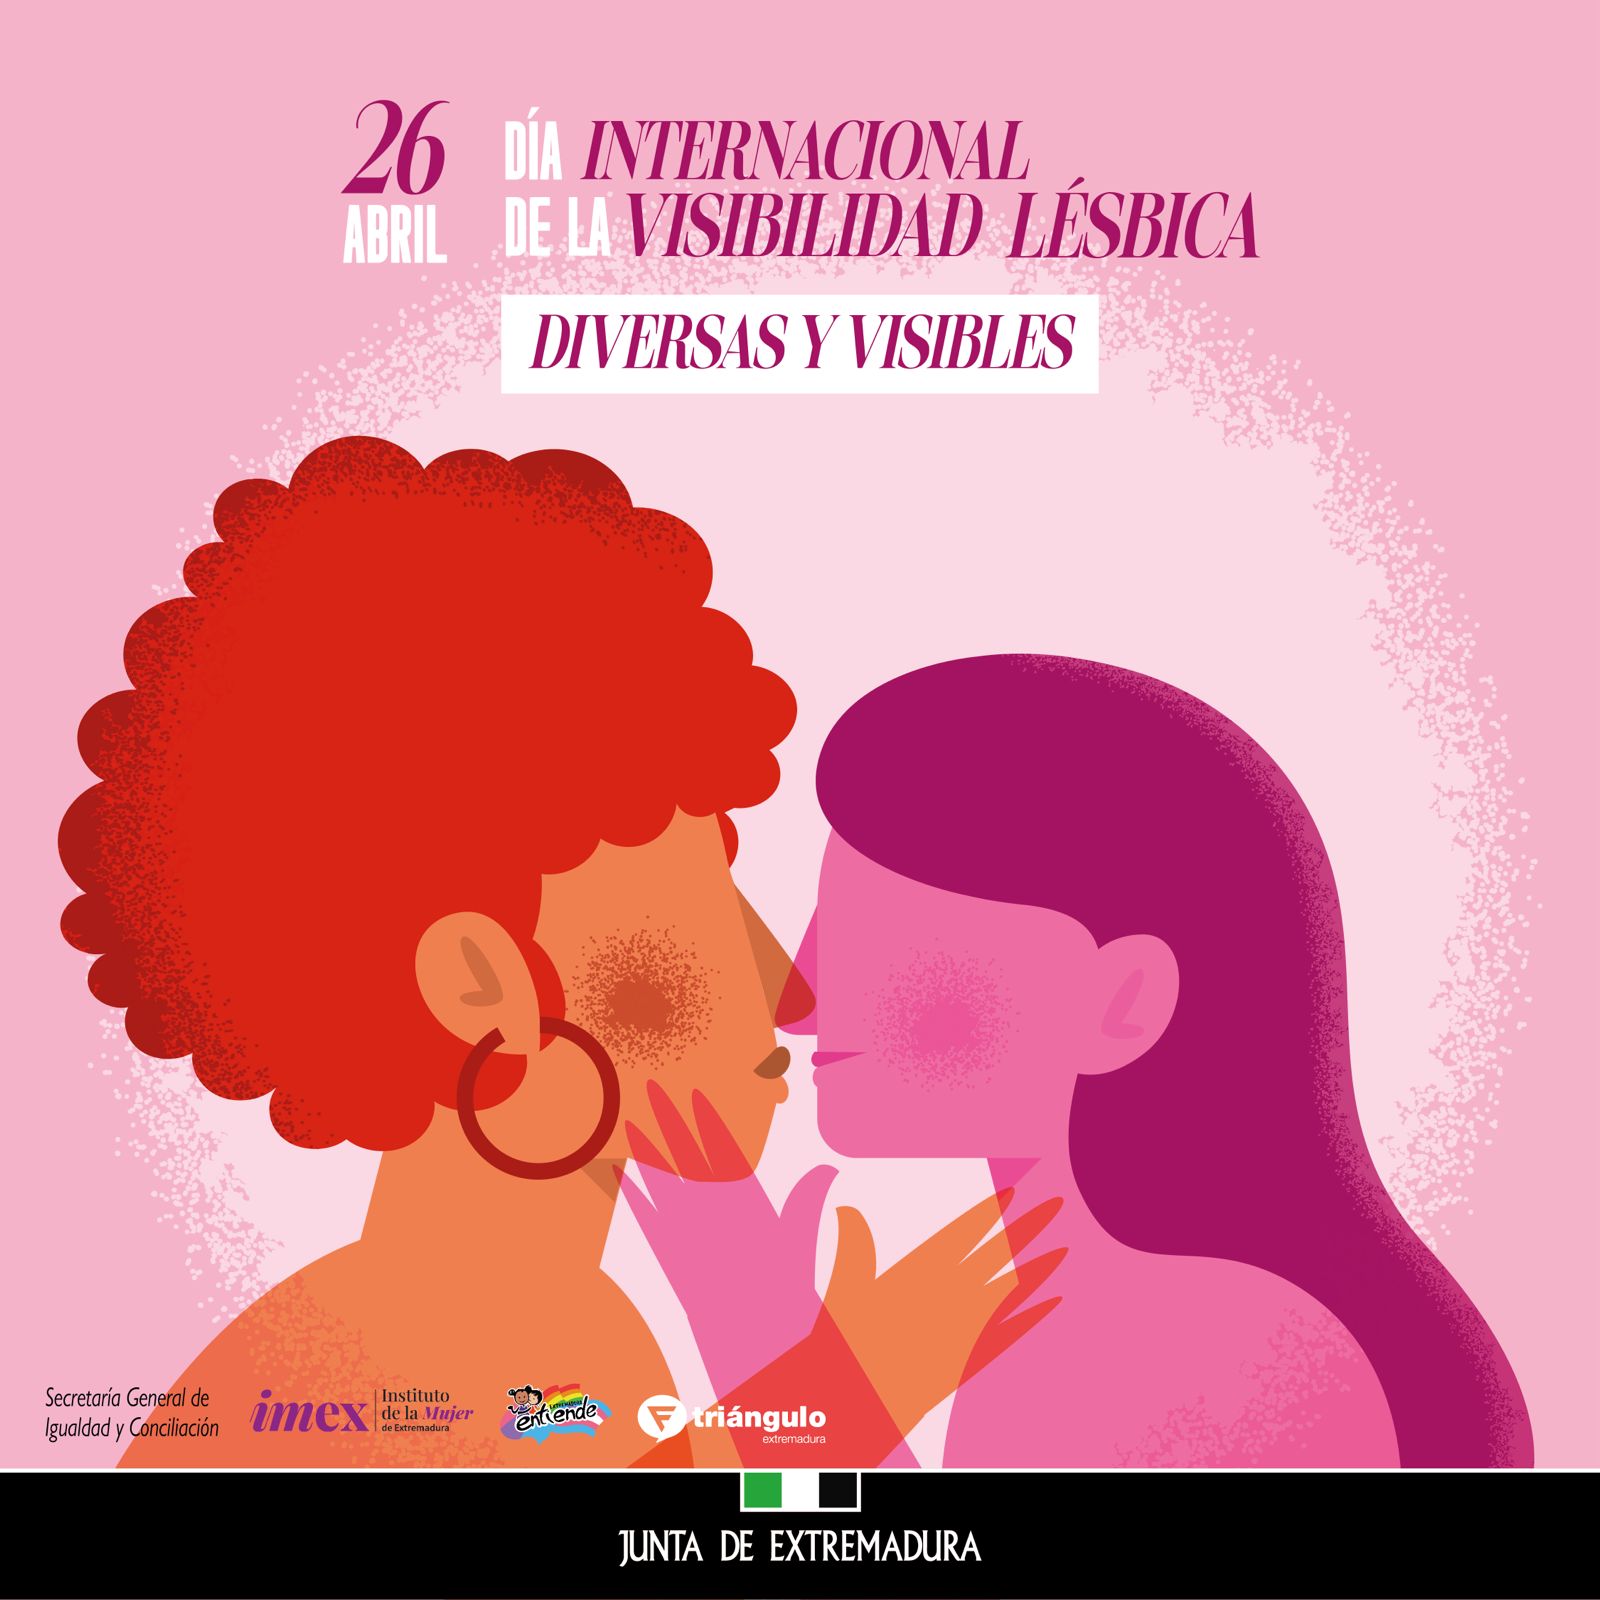 Image 3 of article Ara Sánchez, en el Día Internacional de la Visibilidad Lésbica: La victoria debe estar definida por la palabra normalidad